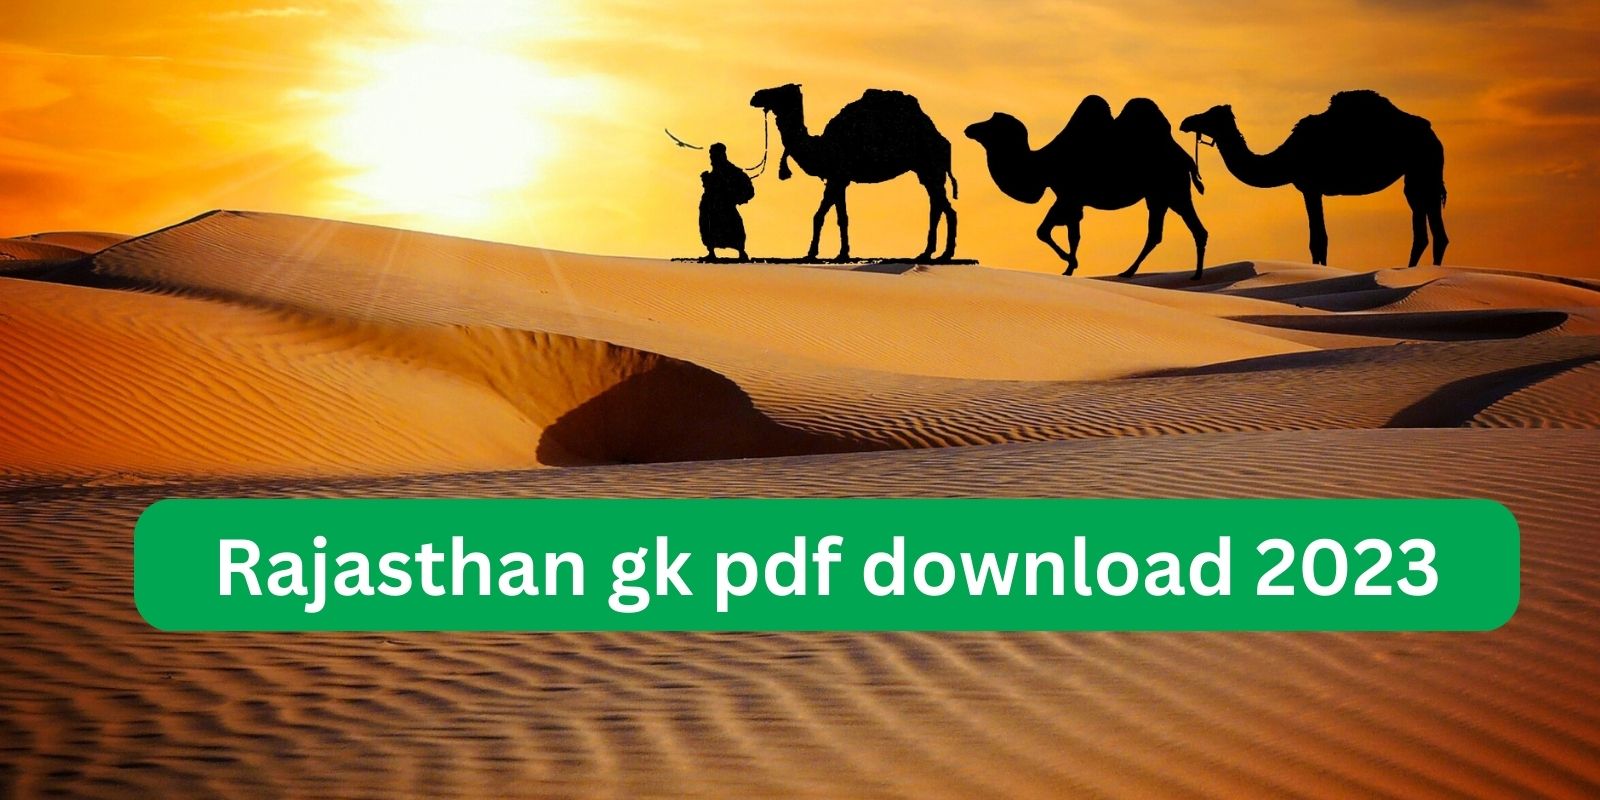 Rajasthan gk pdf download 2023